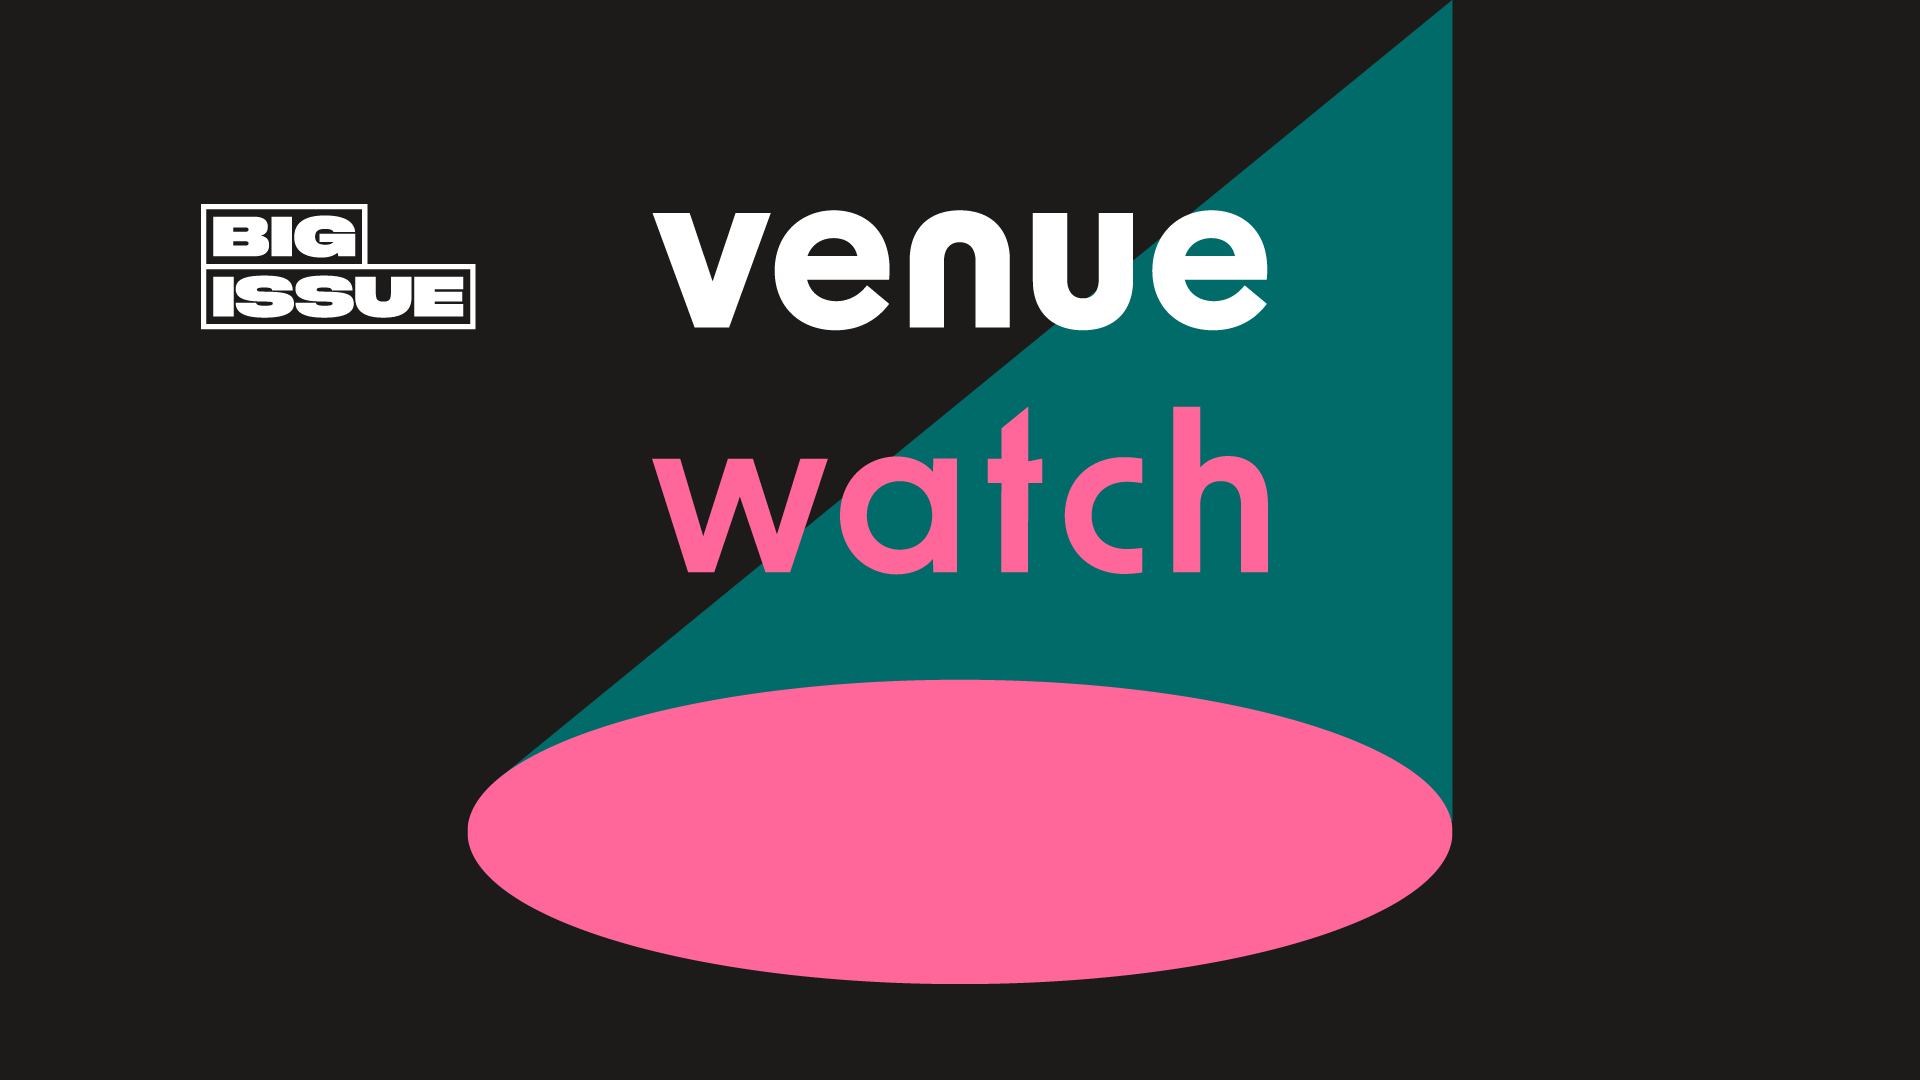 Venue watch logo